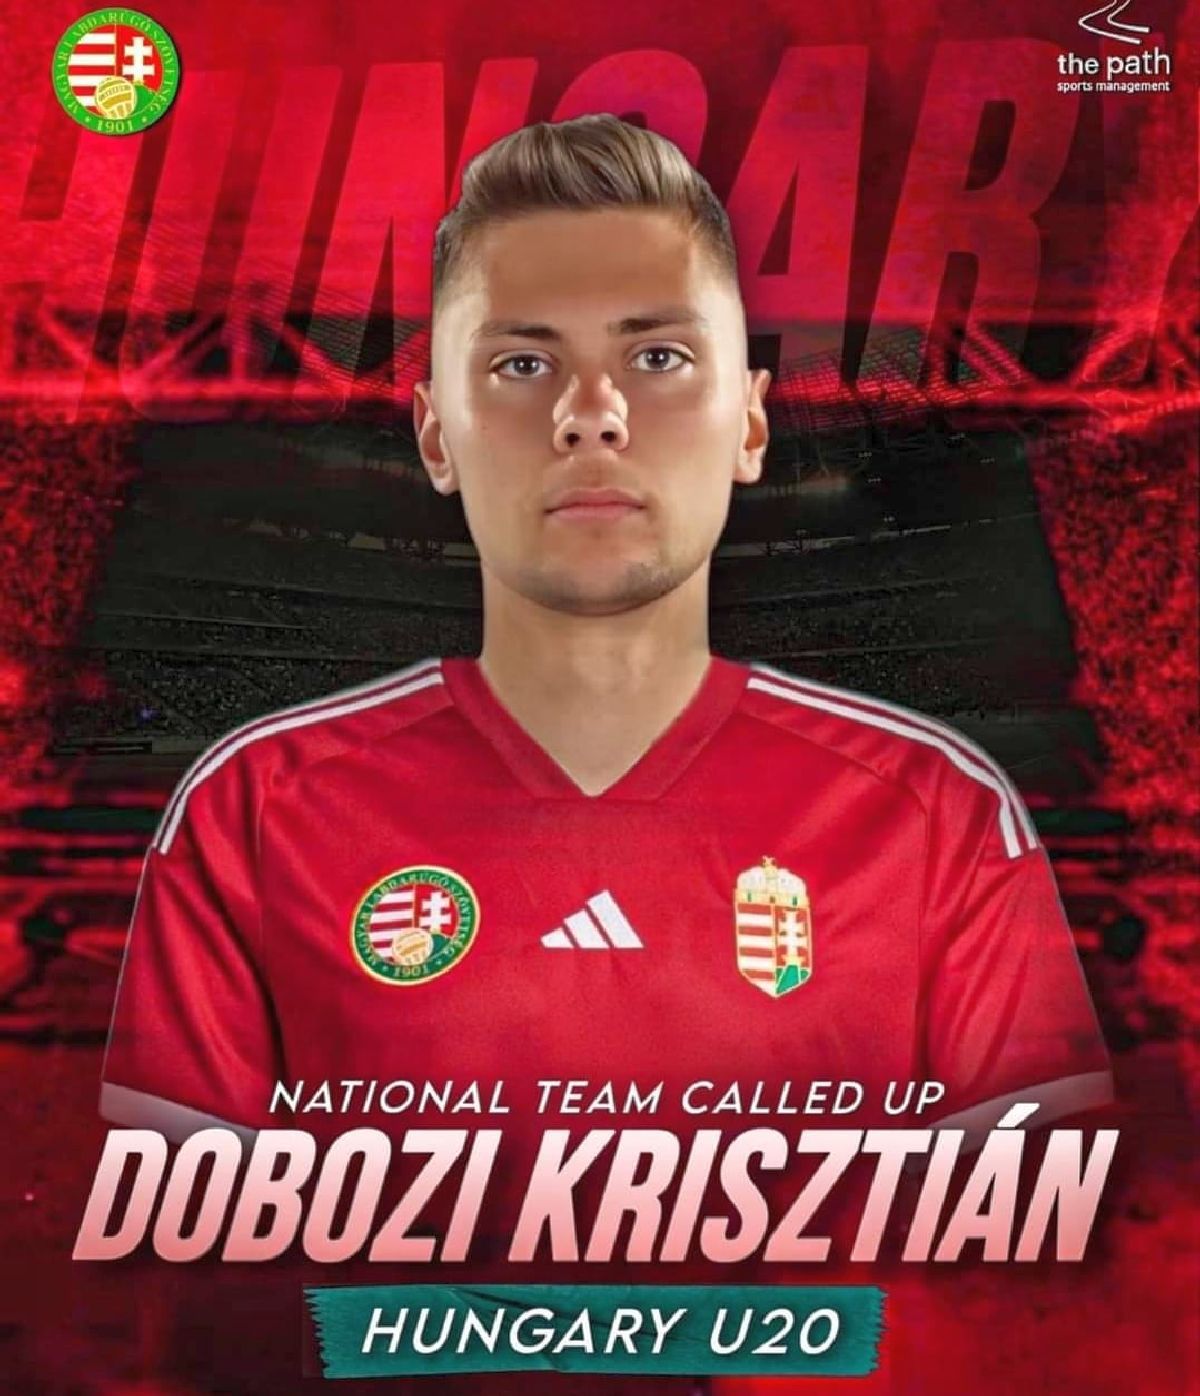 Imagini cu Krisztian Dobozi, fundașul român care a debutat la naționala U20 a Ungariei